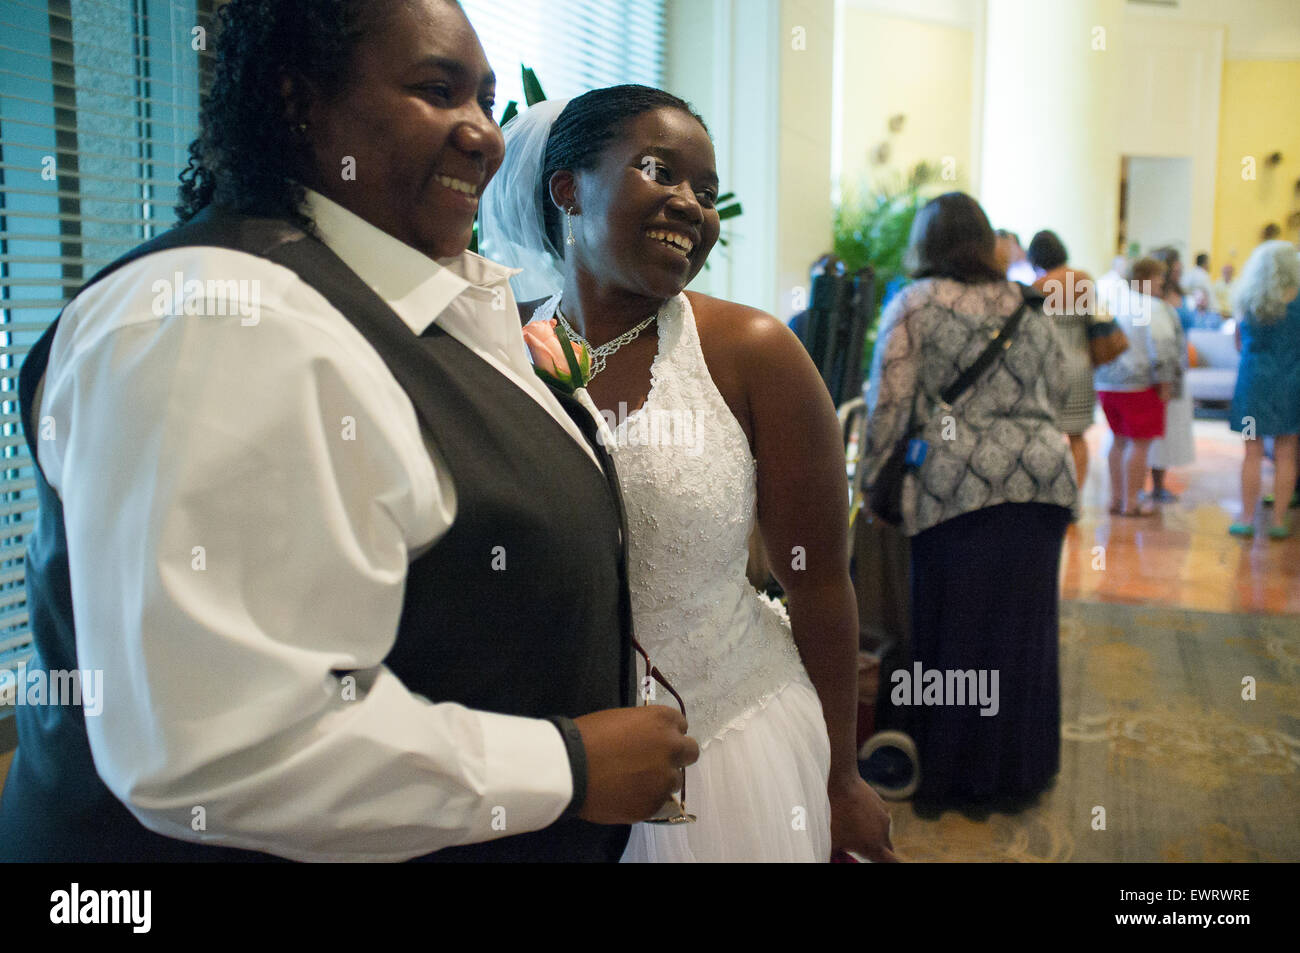 101 Mariages gay, InterContinental Hotel à Atlanta. L'événement, qui a eu lieu le lendemain de la décision SCOTUS de 2015, a été organisé par des dizaines de couples. Banque D'Images